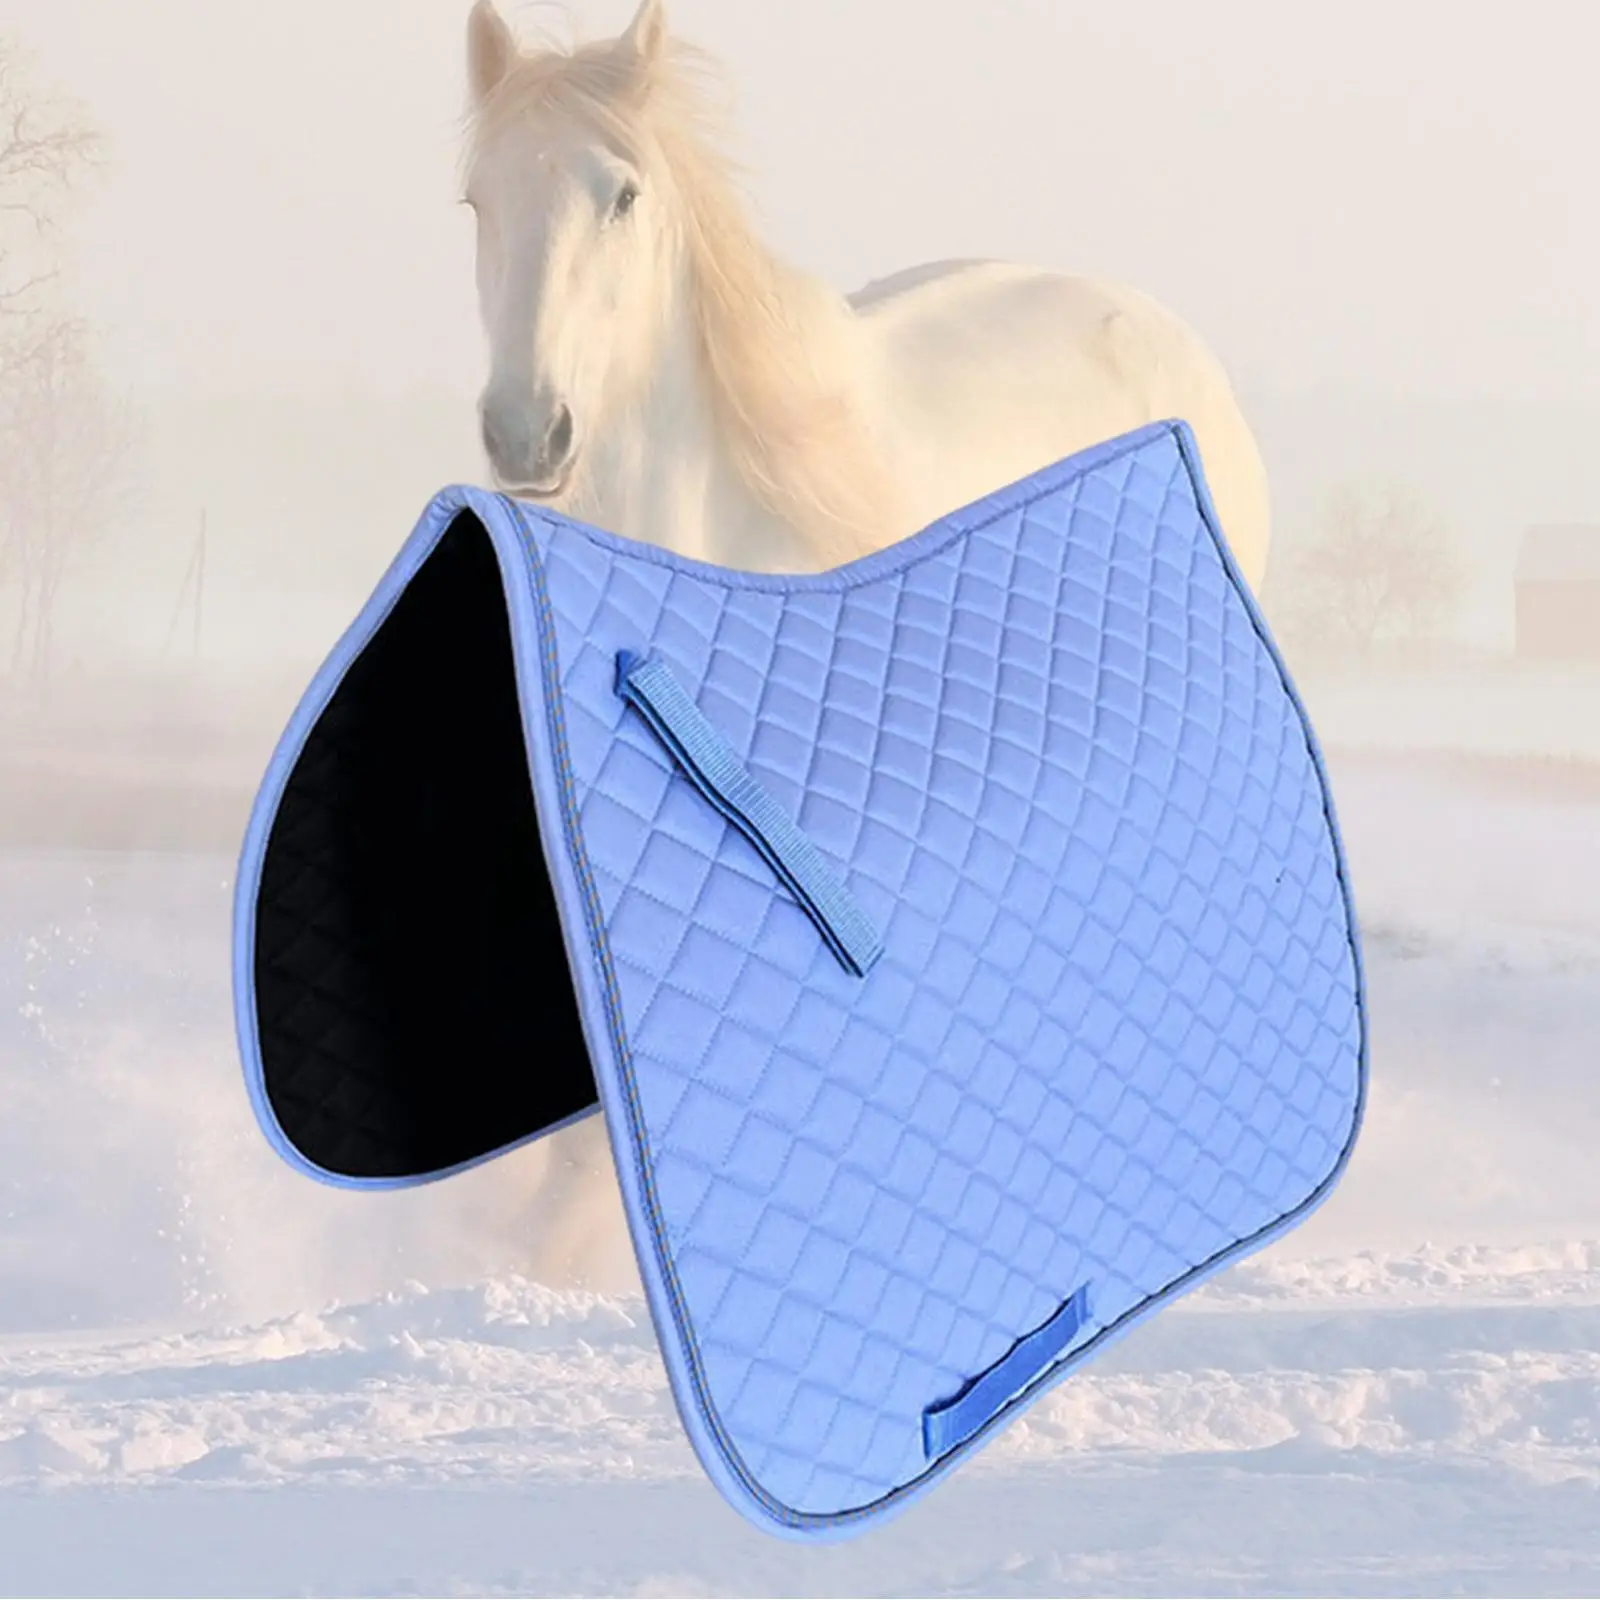 

Прокладка для седла лошади, портативное защитное легкое противоскользящее оборудование для верховой езды, дышащая утолщенная подкладка для Выездки